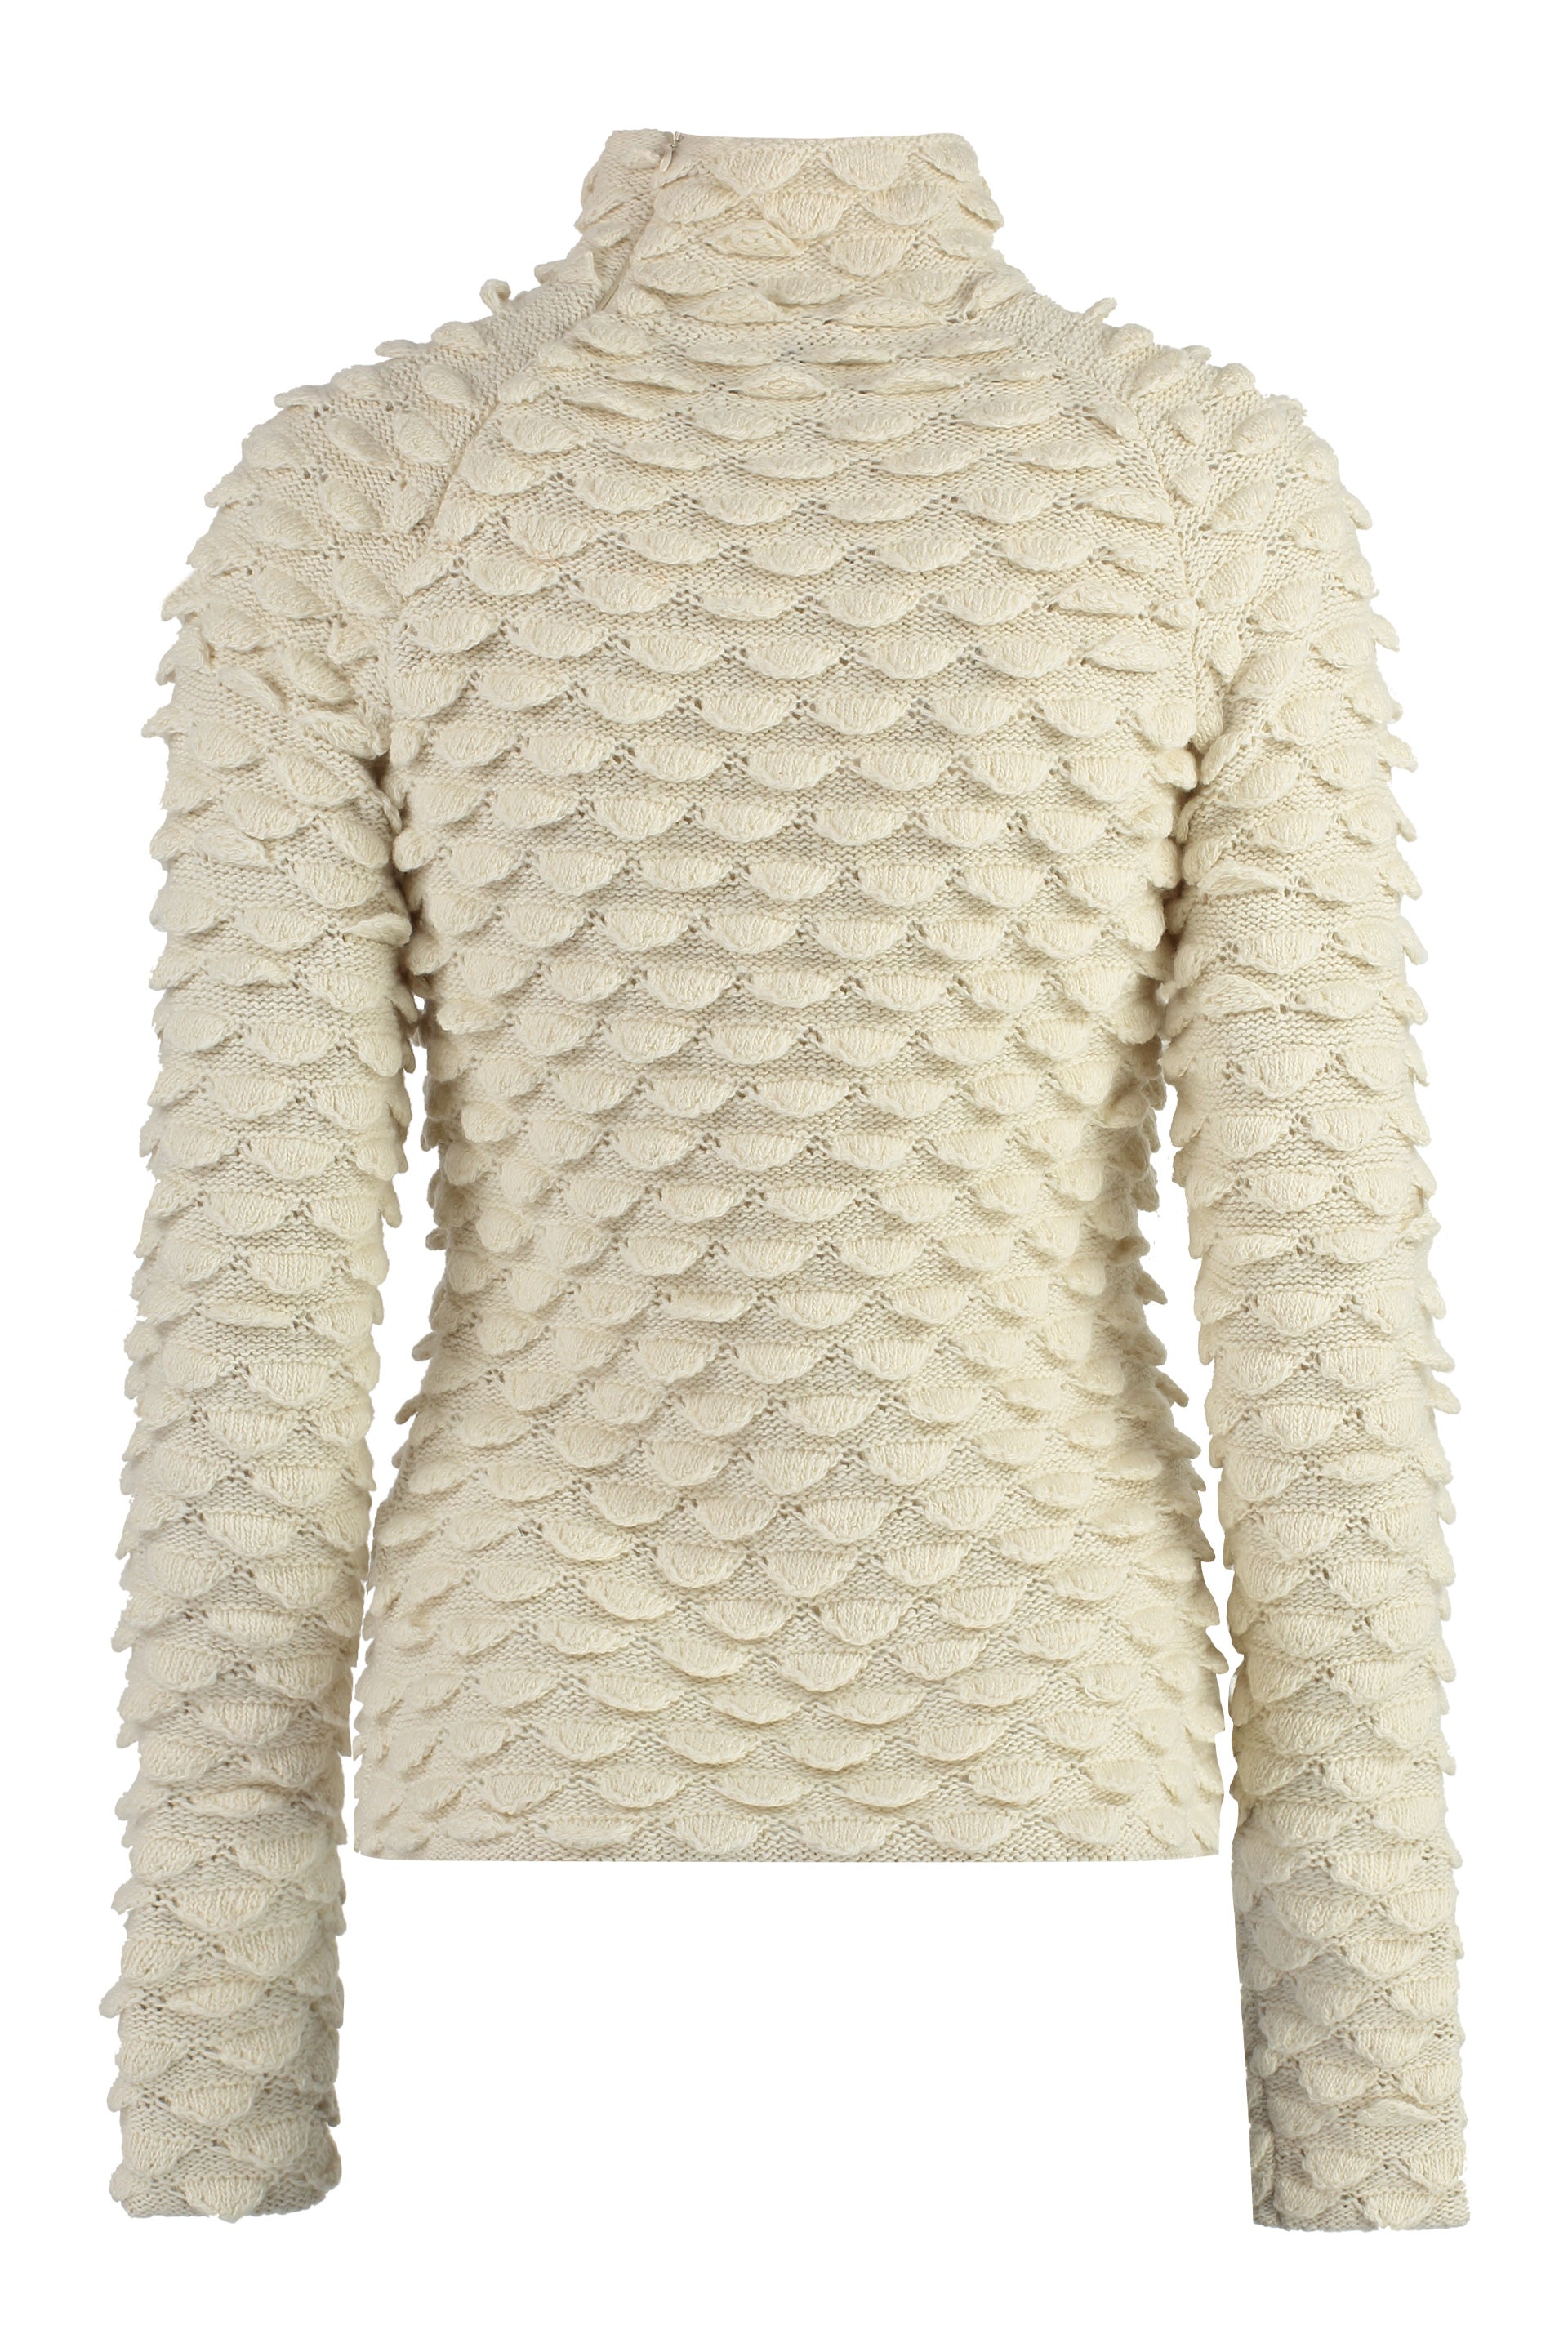 Shop Bottega Veneta Classic Fish Scale Turtleneck Sweater For Women In Panna